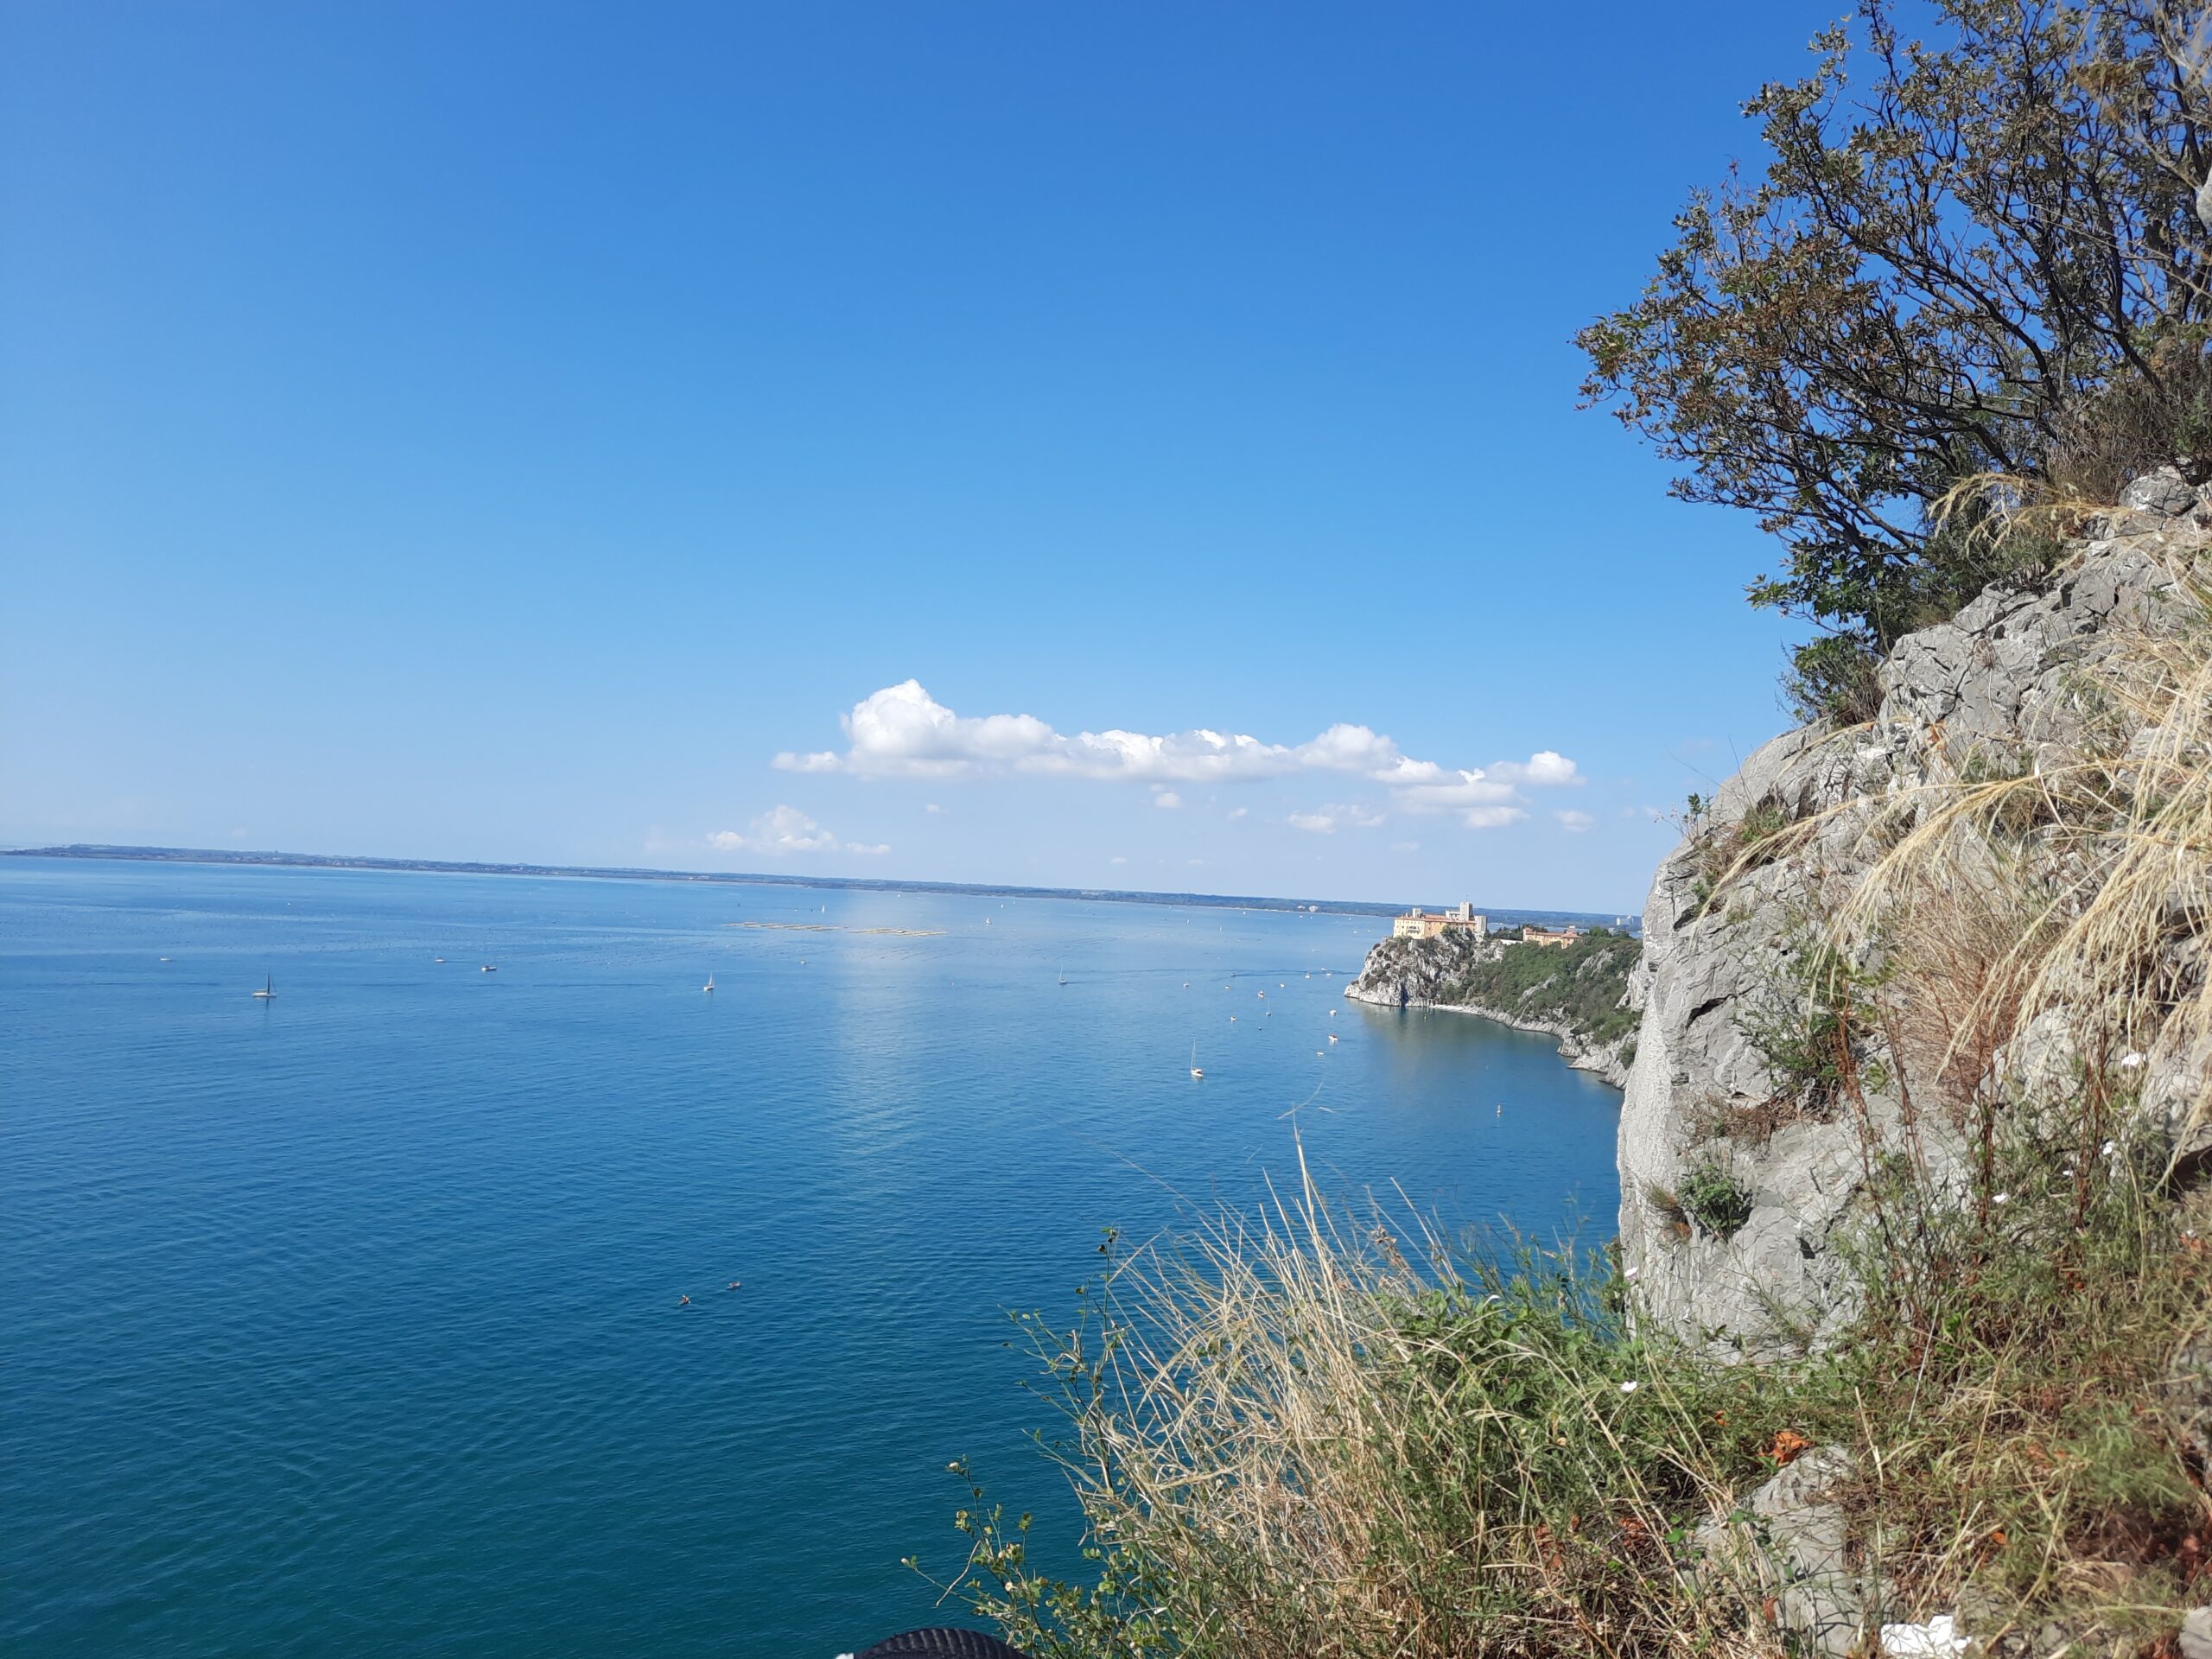 Urlaubsbild an der Küste Italiens.